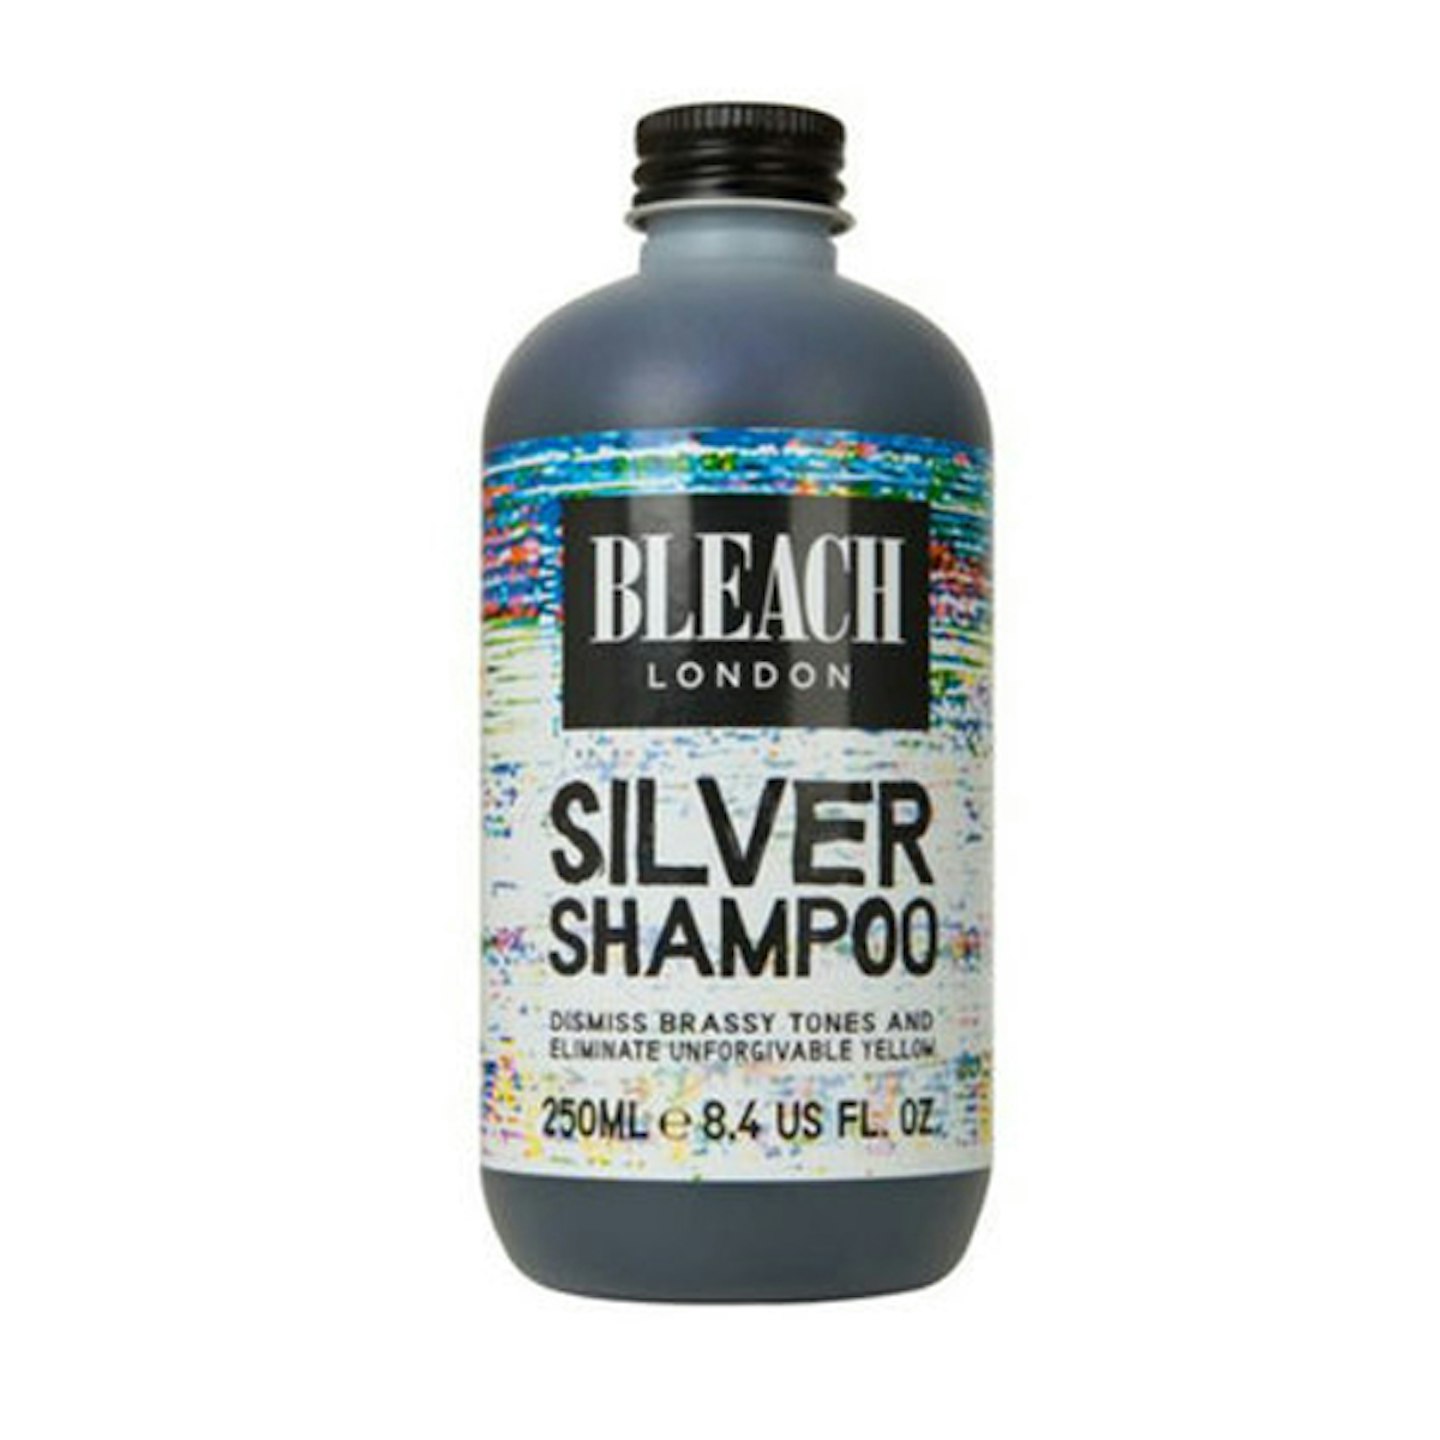 Bleach silver shampoo